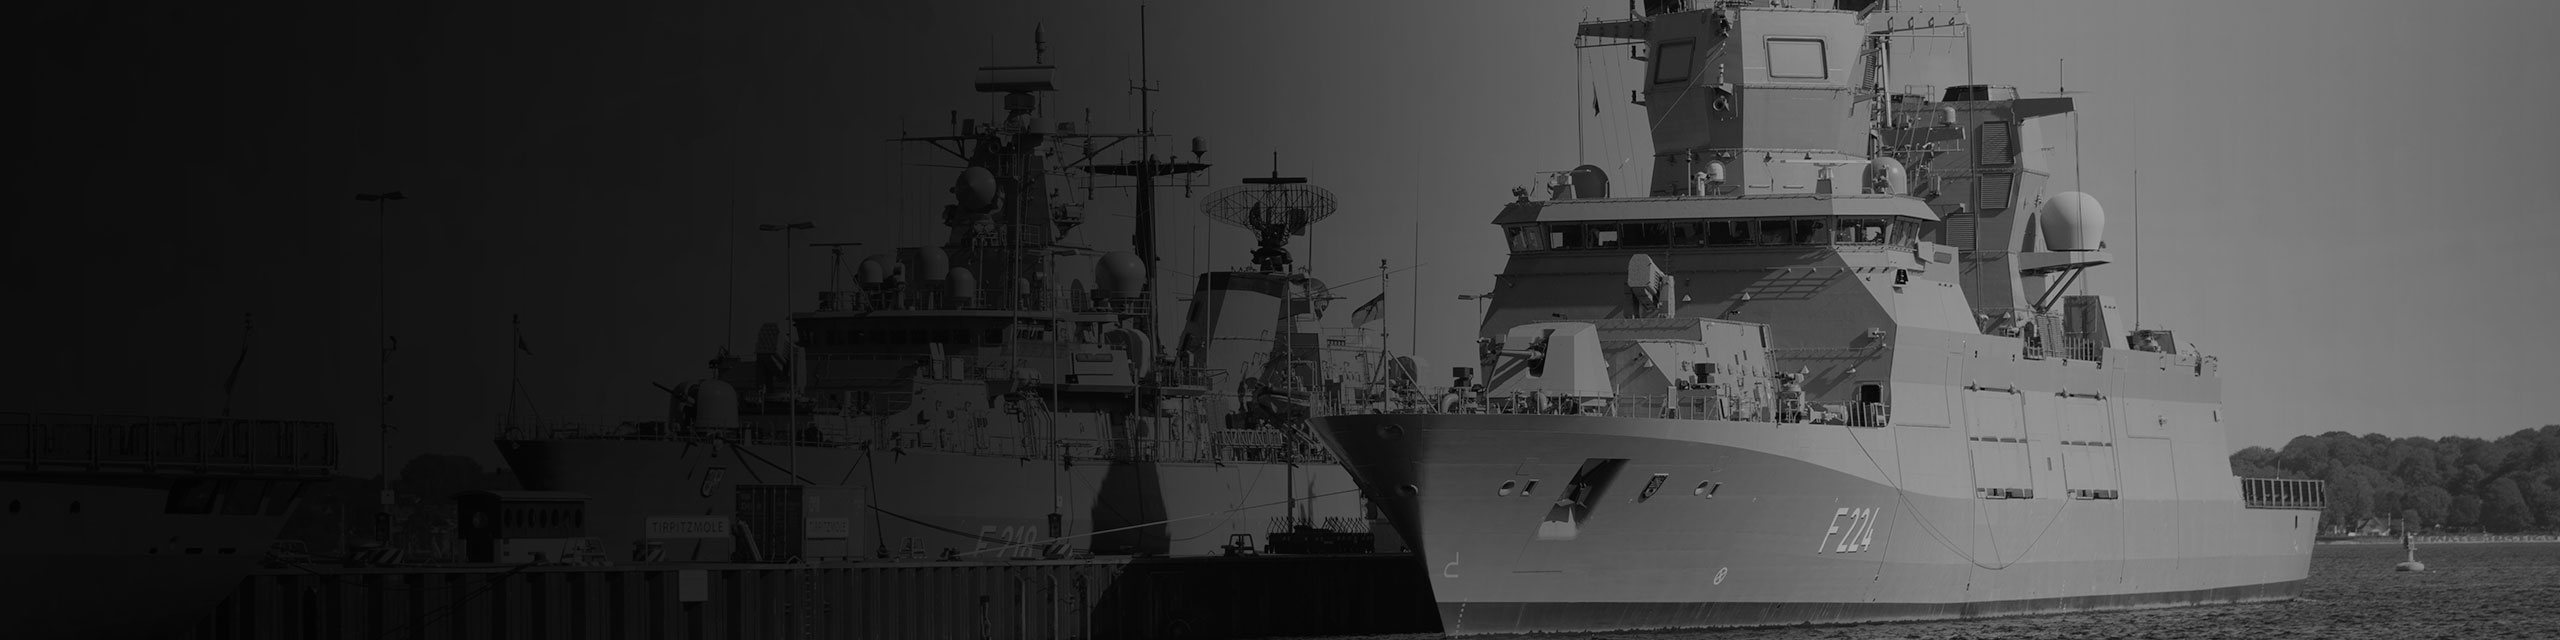 Fregatte SACHSEN-ANHALT der Klasse F-125 an der Pier.